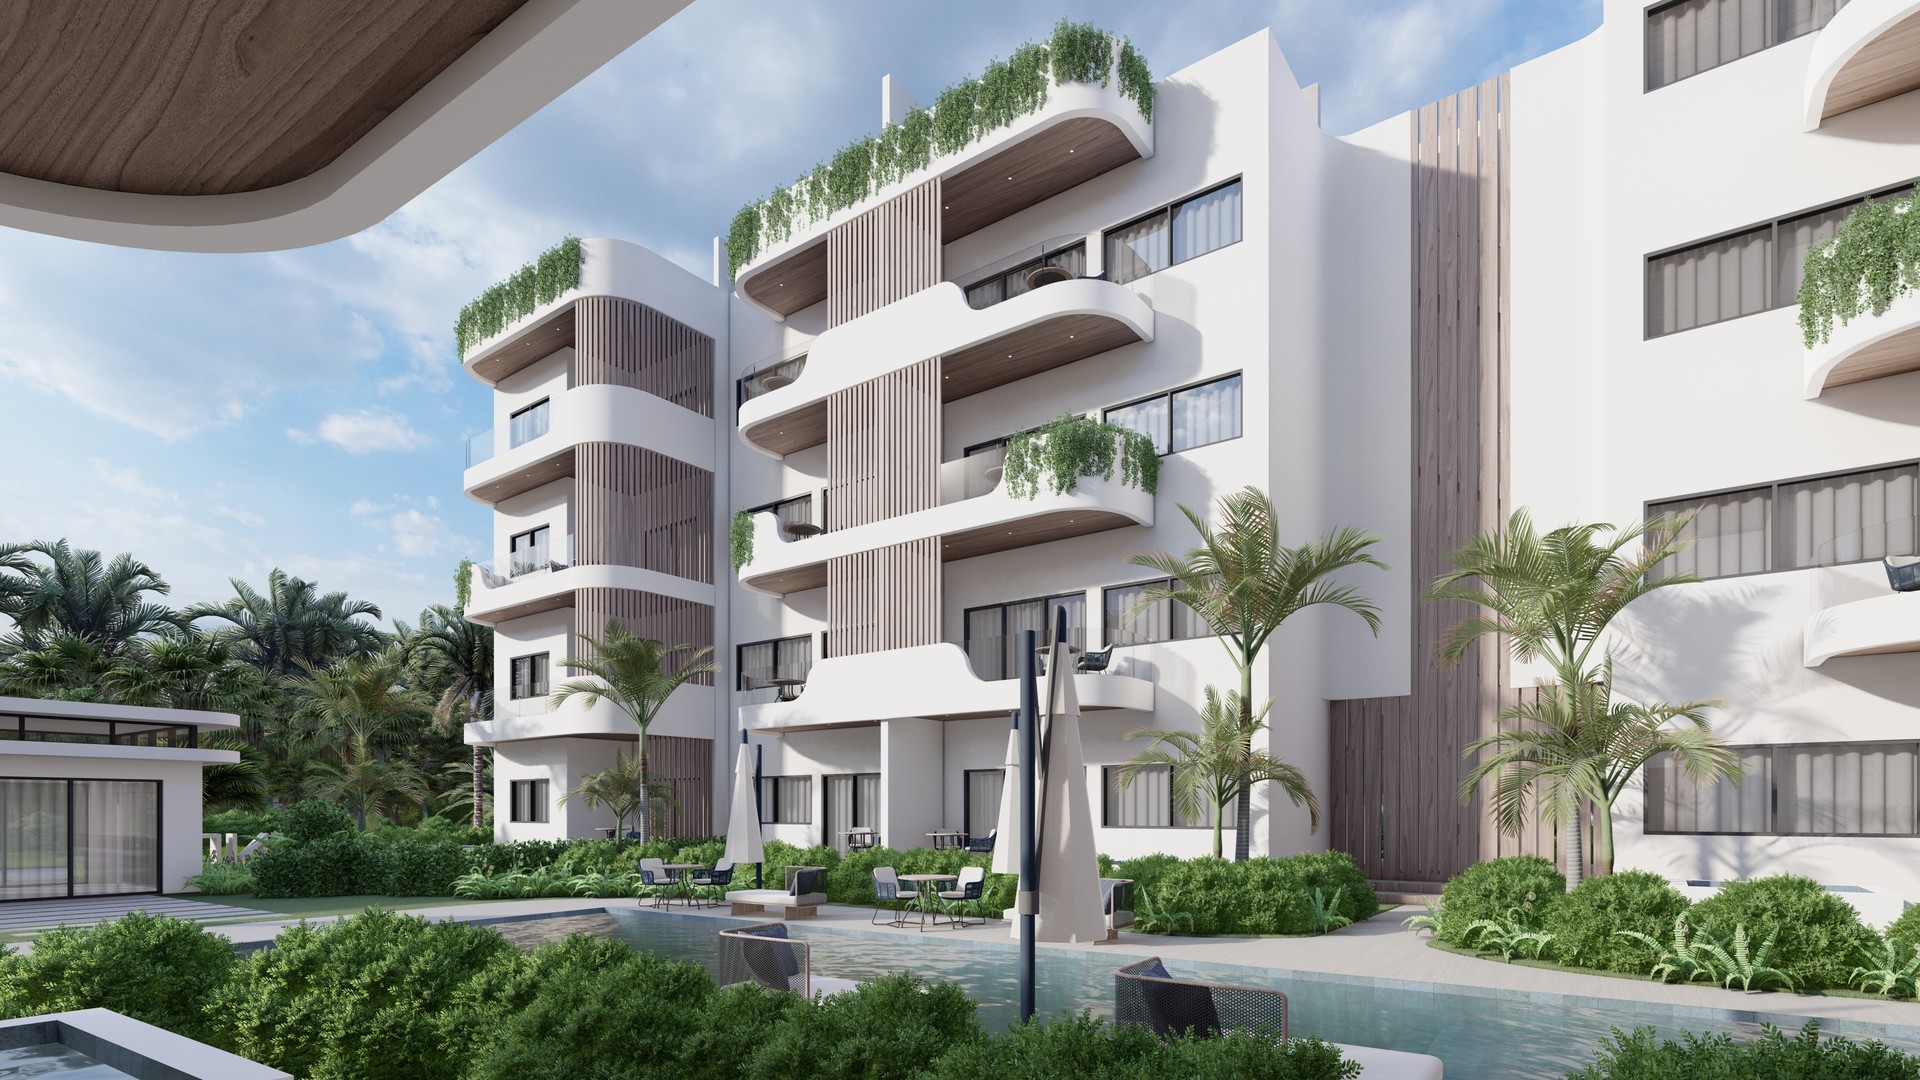 apartamentos - Vista Cana, US$117,000
Complejo armonico y exclusivo de solo 40 apartamentos.